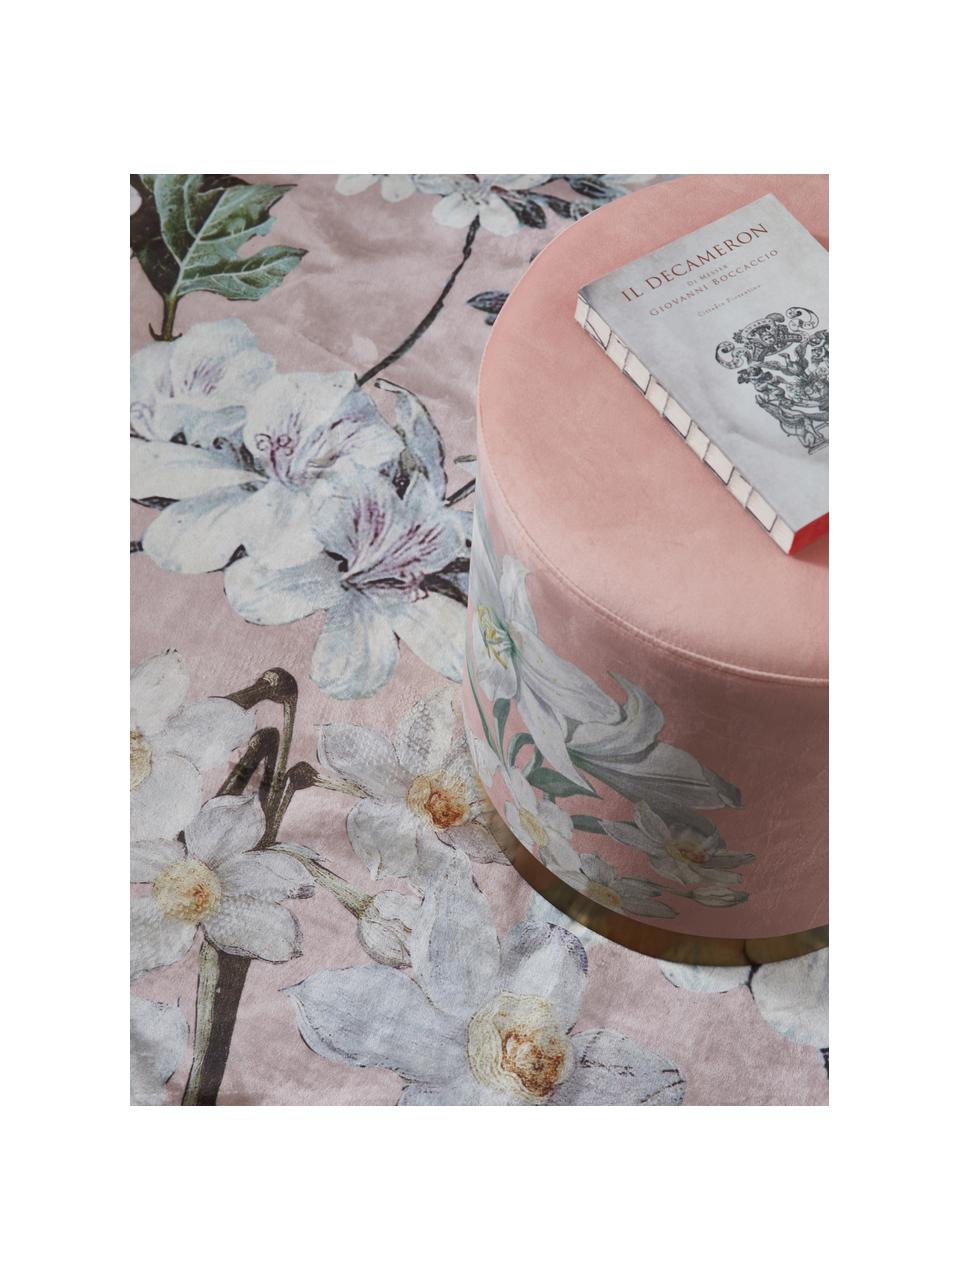 Teppich Rosalee mit Blumenmuster, 60% Polyester, 30% thermoplastisches Polyurethan, 10% Baumwolle, Rosa, Mehrfarbig, B 180 x L 240 cm (Grösse M)